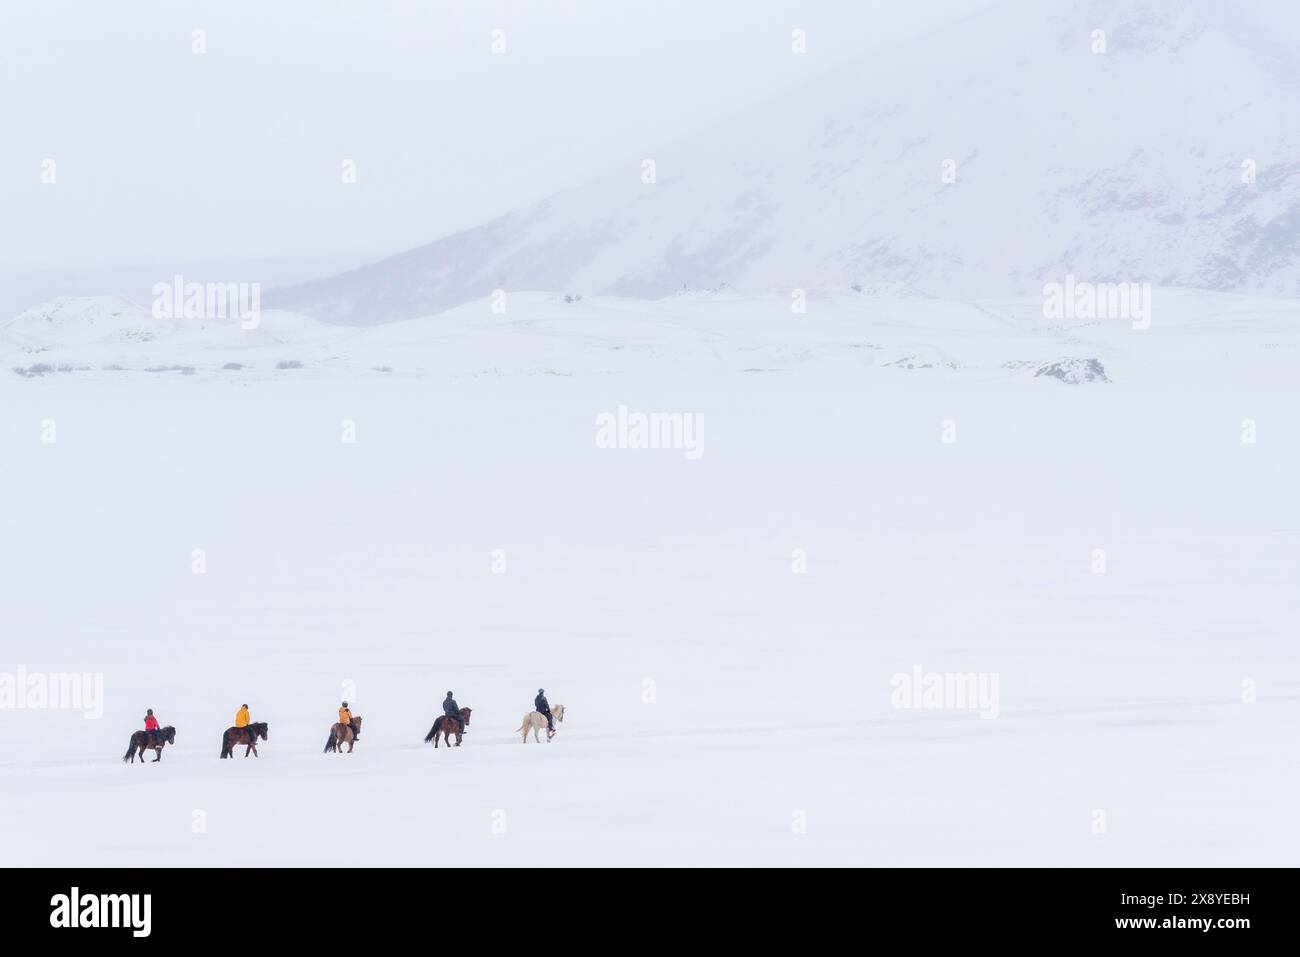 Island, nordöstliche Region, isländische Pferde und Reiter auf dem gefrorenen See Myvatn Stockfoto